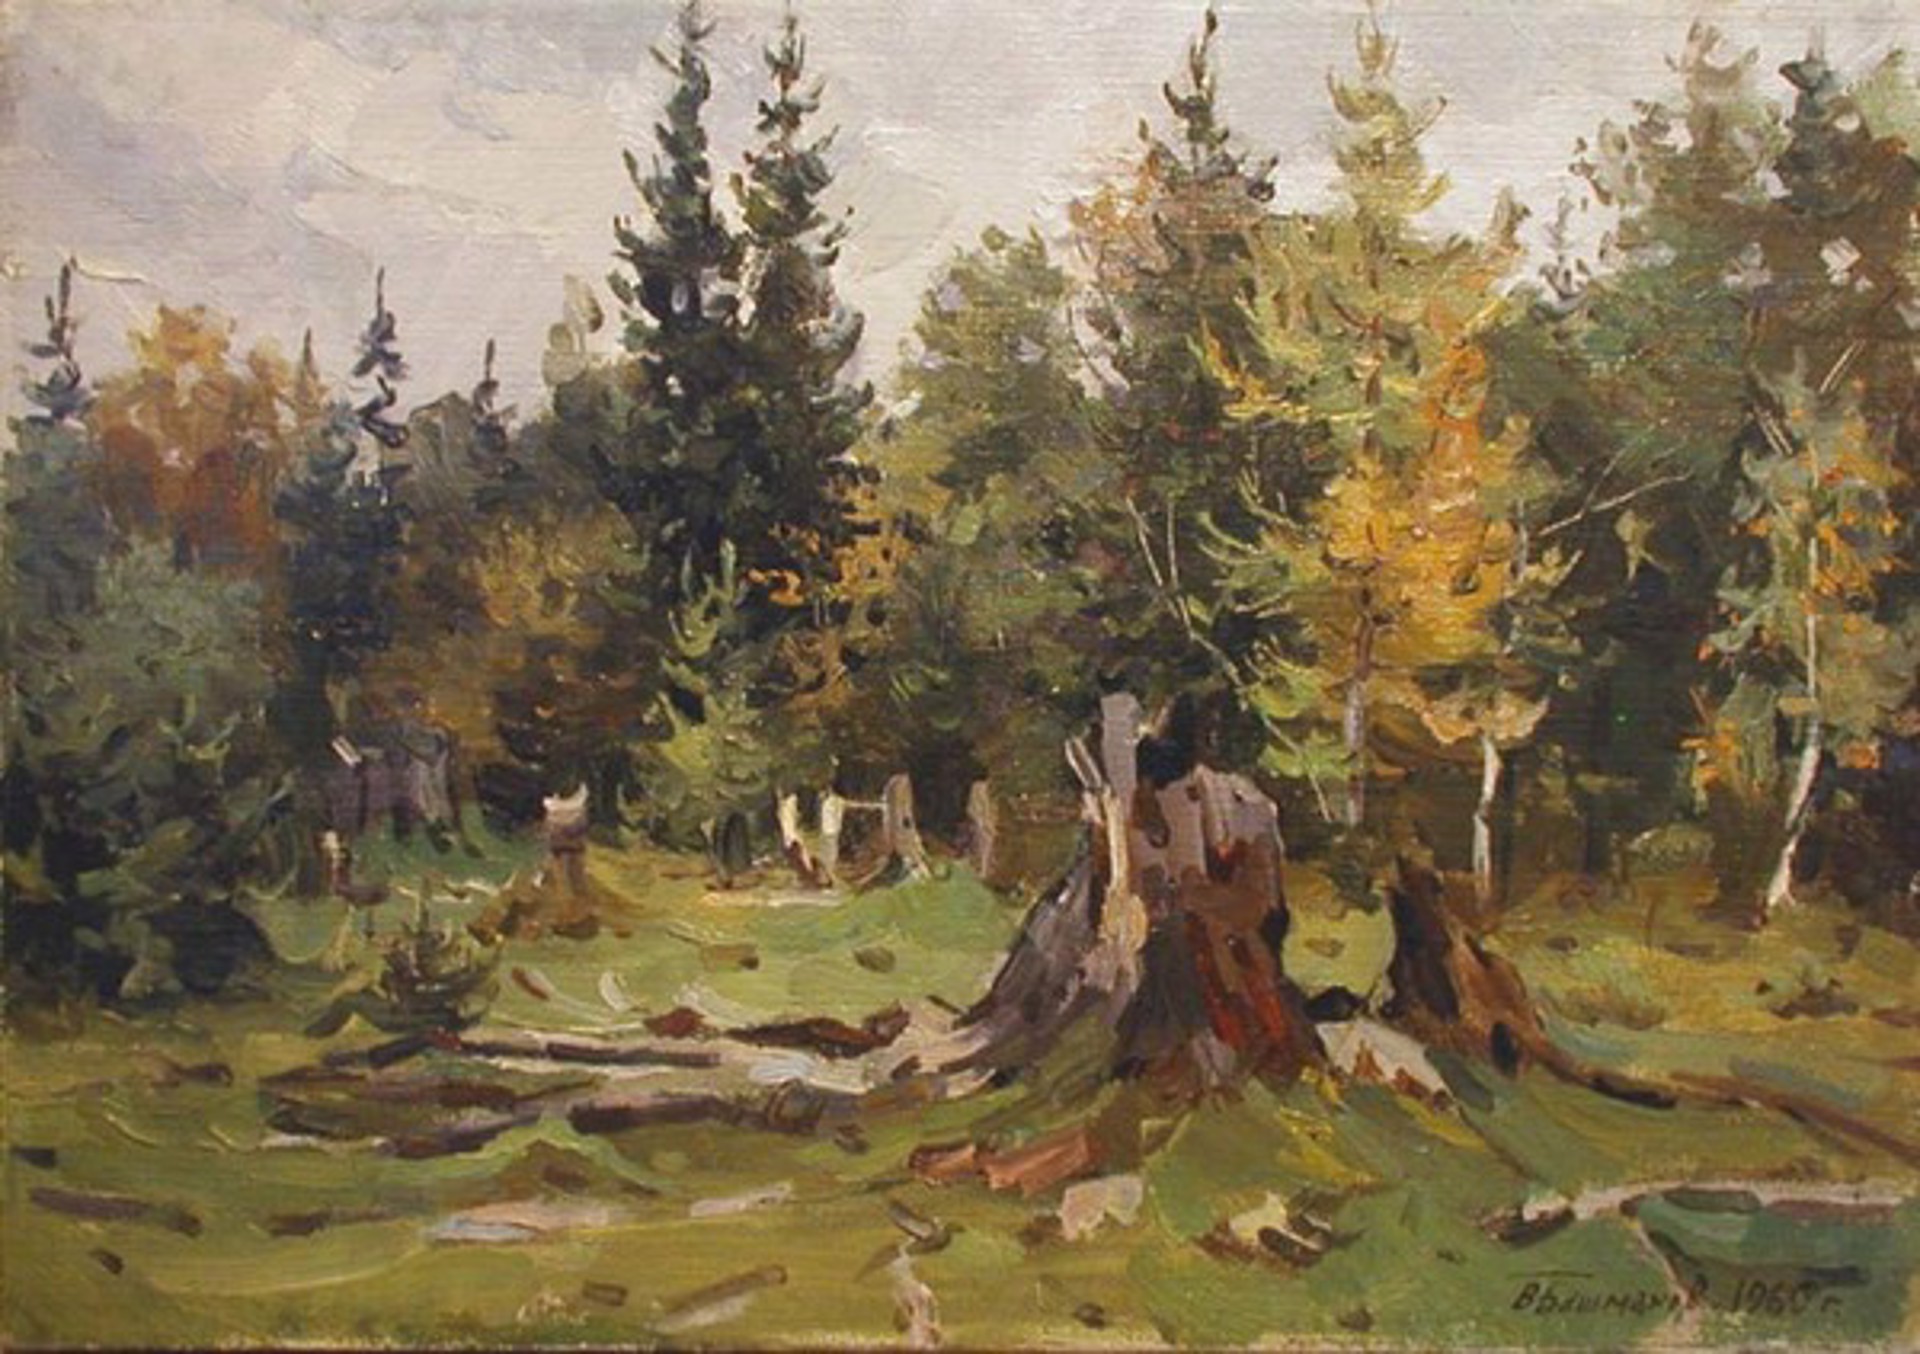 Forest Study by Vladimir Bashmakov